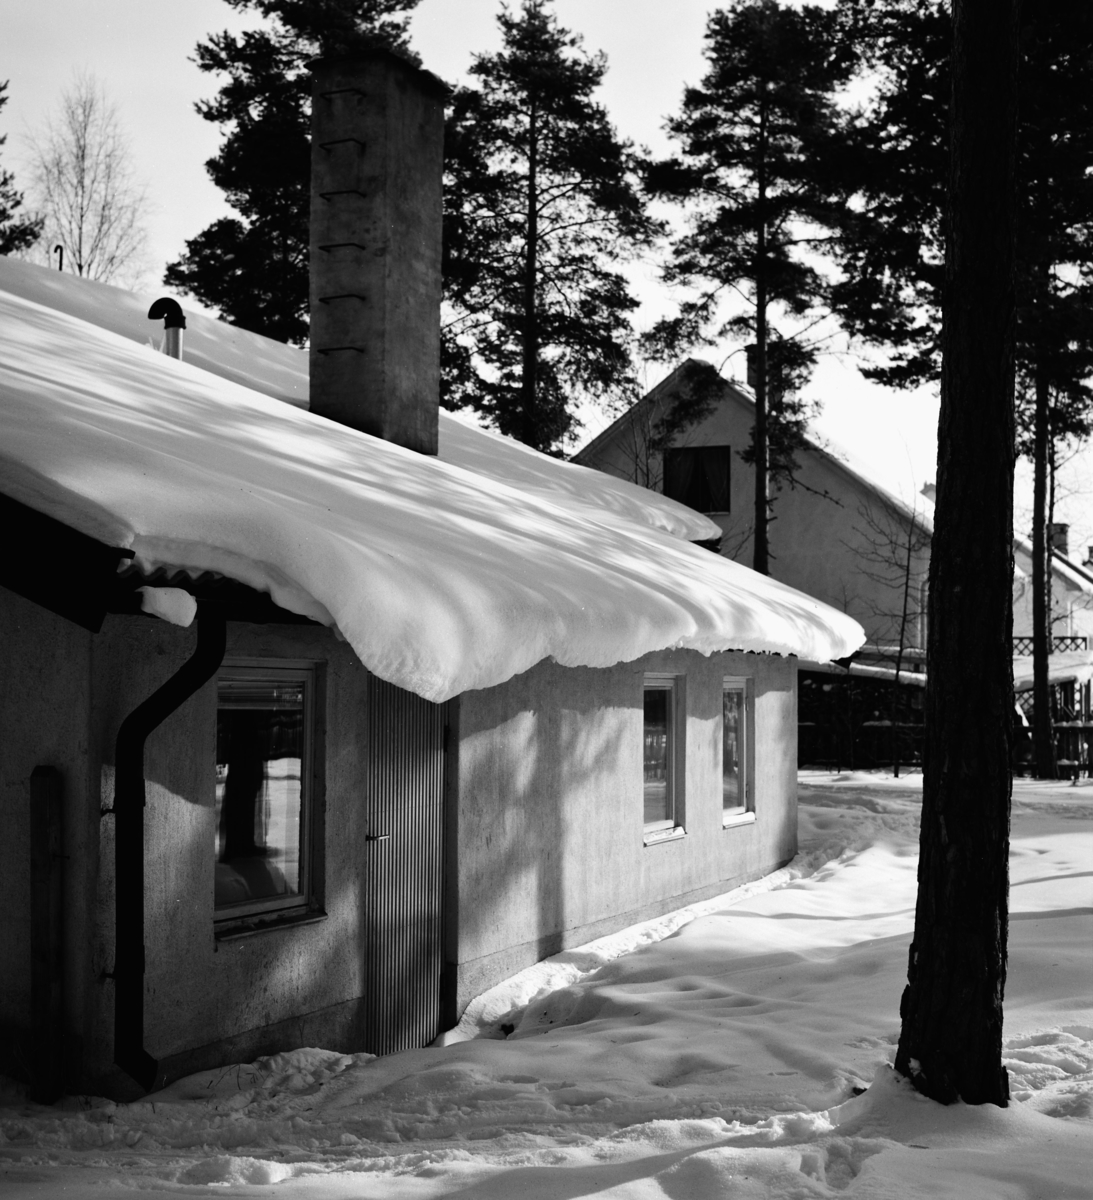 Standardhus, Hultsfred
Exteriör, enplanshus beskuggat av höga träd under snötäcke. Experimenthus